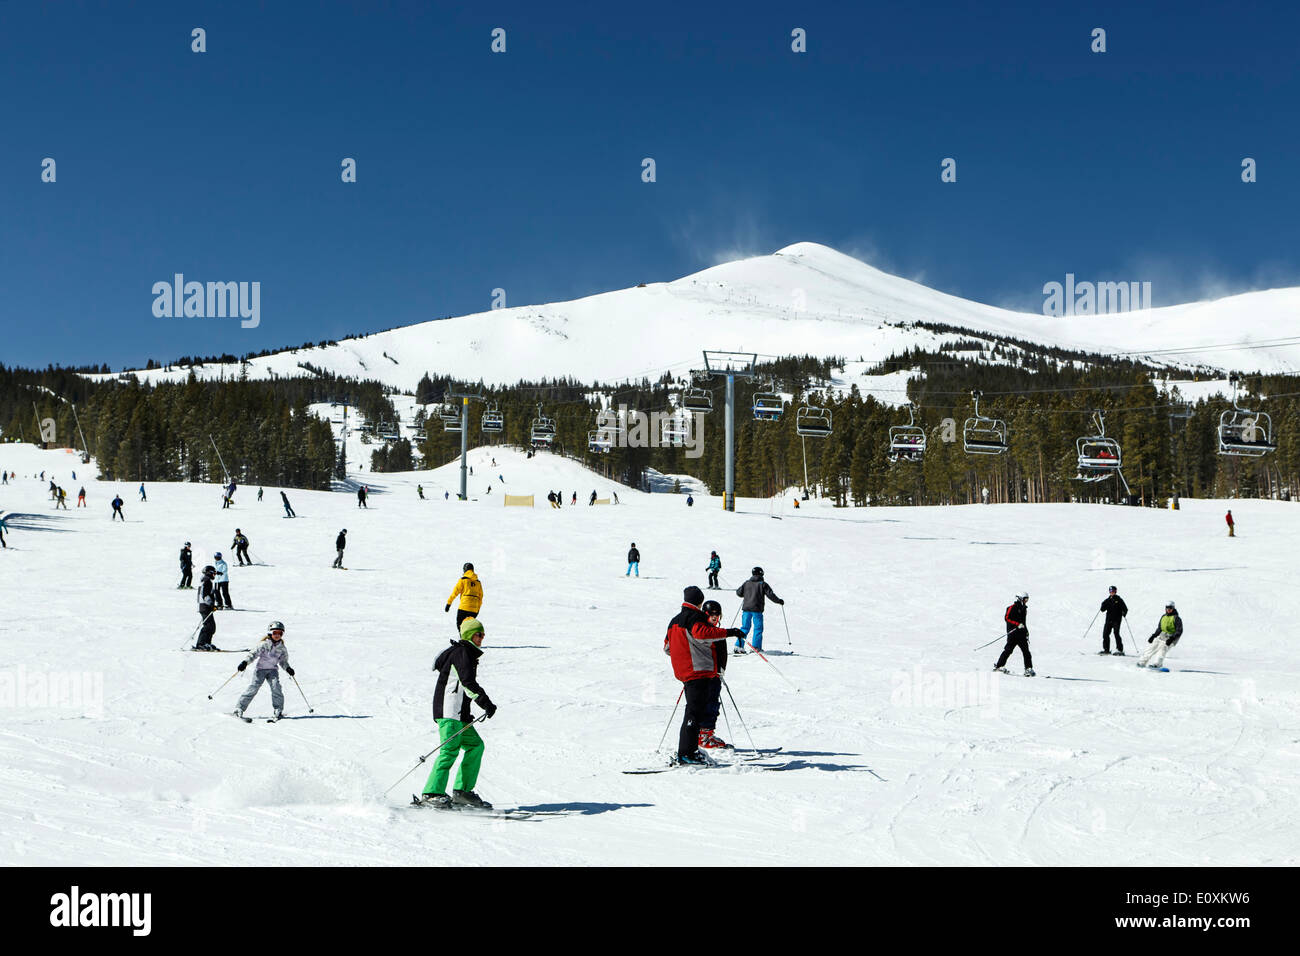 Coperte di neve il picco 8, ski-lift e gli sciatori e gli snowboarder sulla pista da sci, a Breckenridge, Colorado, STATI UNITI D'AMERICA Foto Stock